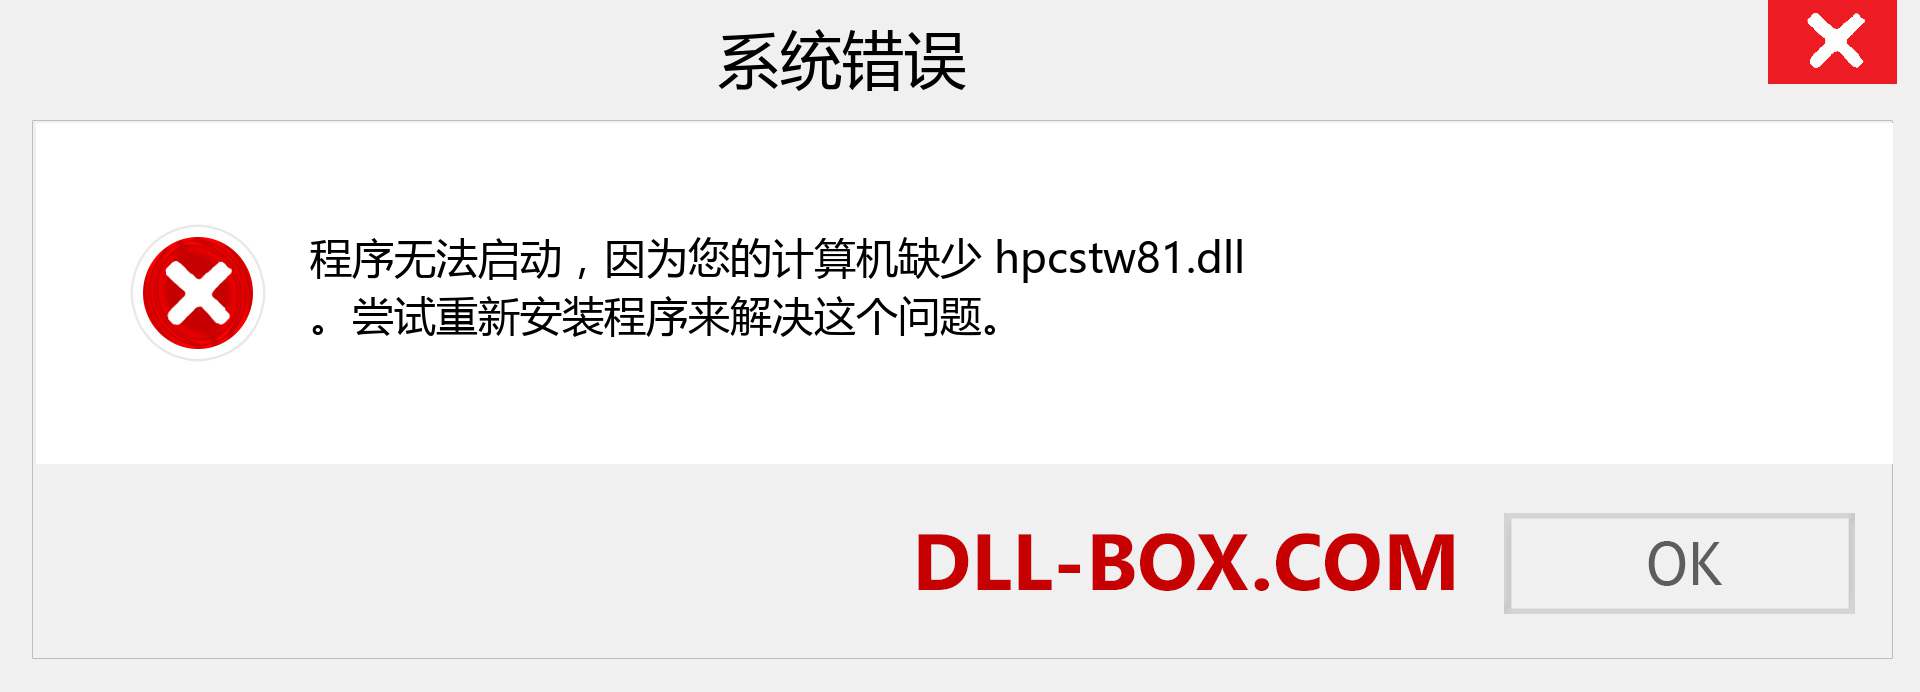 hpcstw81.dll 文件丢失？。 适用于 Windows 7、8、10 的下载 - 修复 Windows、照片、图像上的 hpcstw81 dll 丢失错误